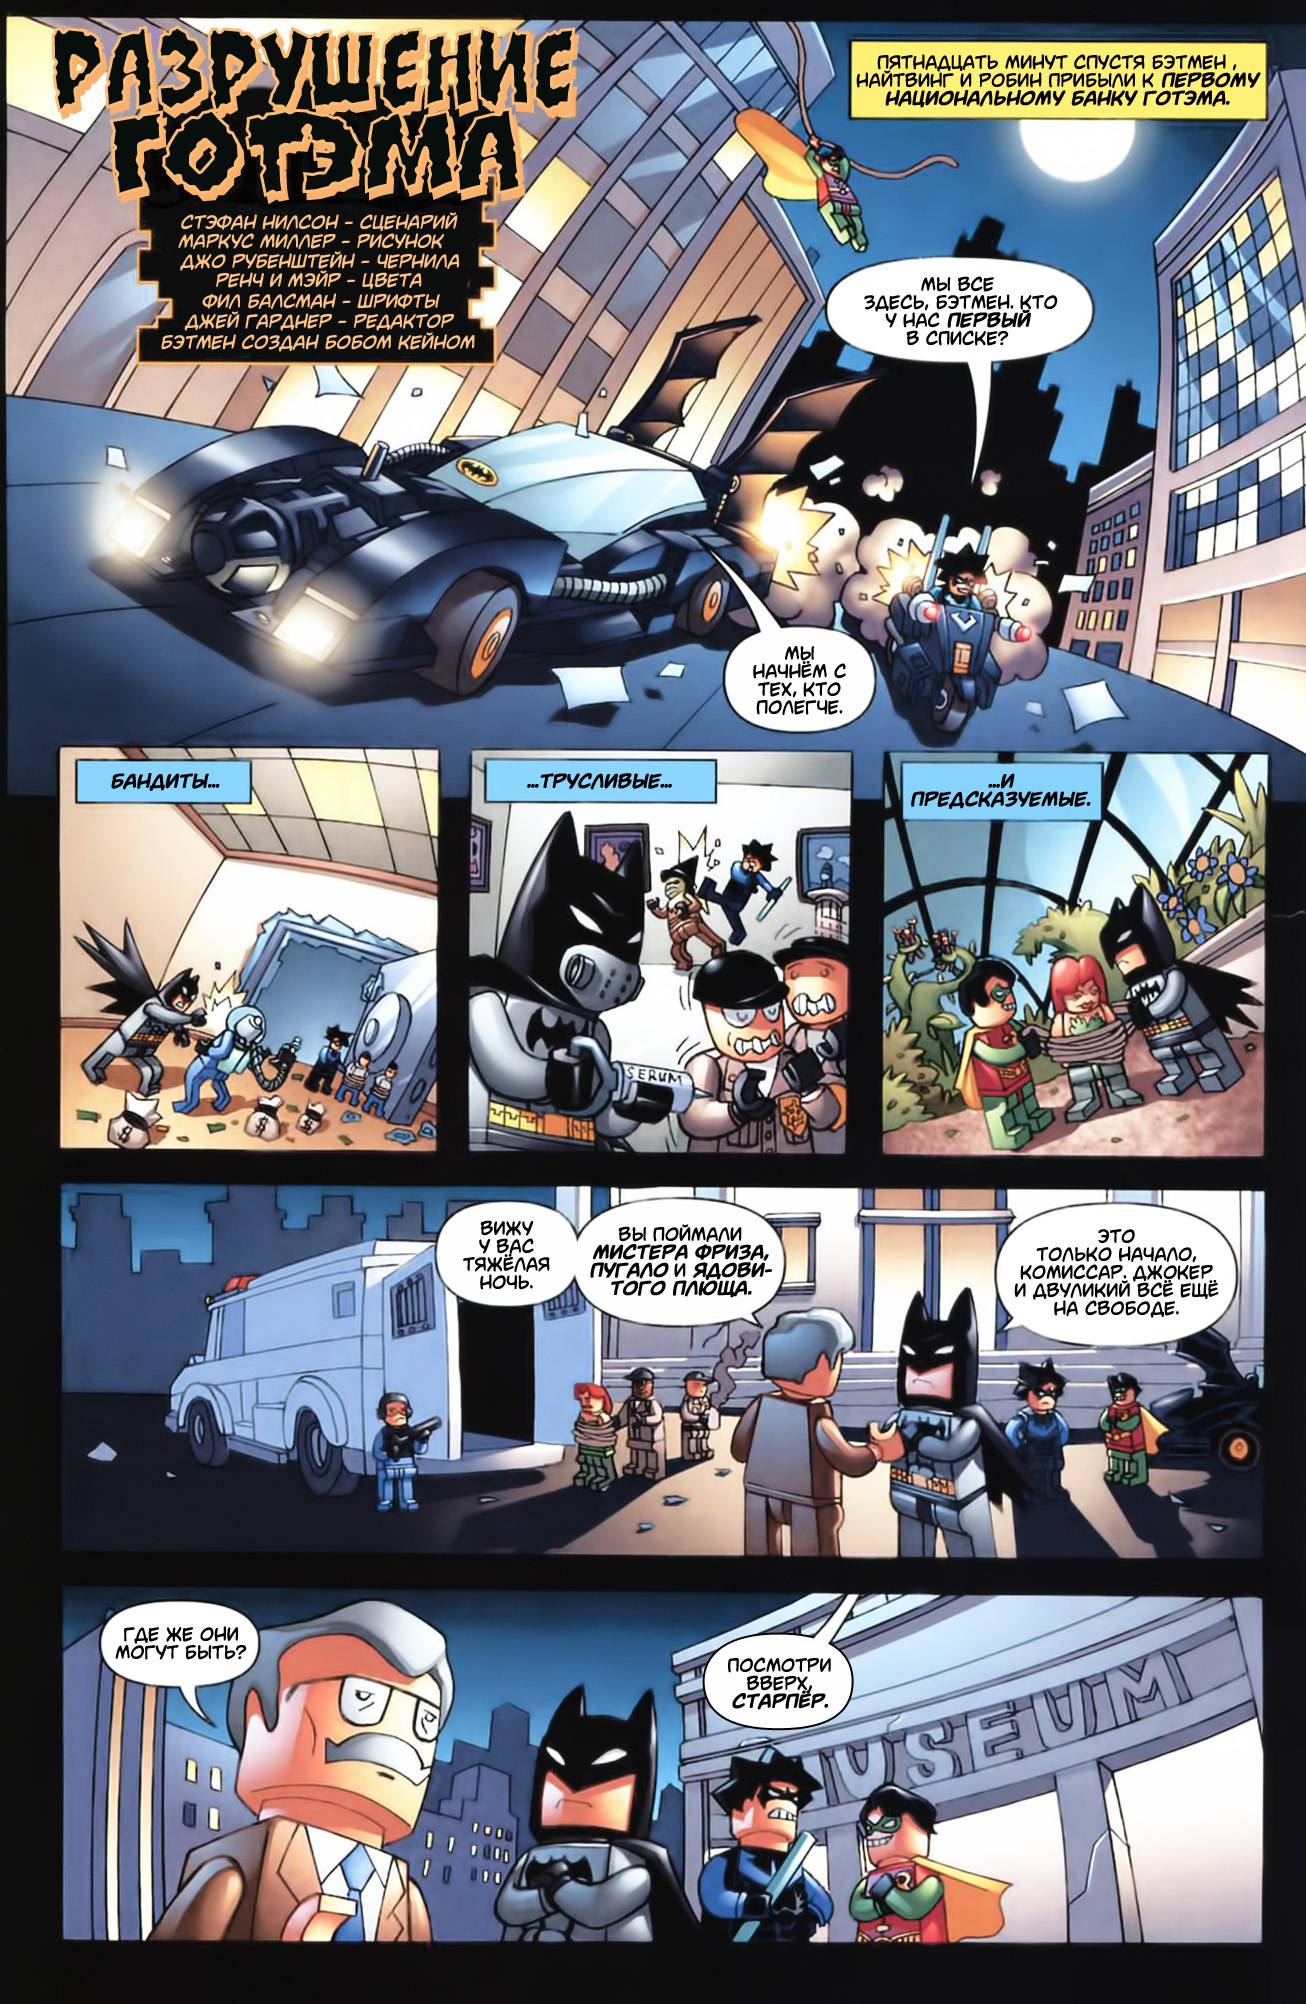 Бэтмен-Лего: Секреты и истории происхождения онлайн